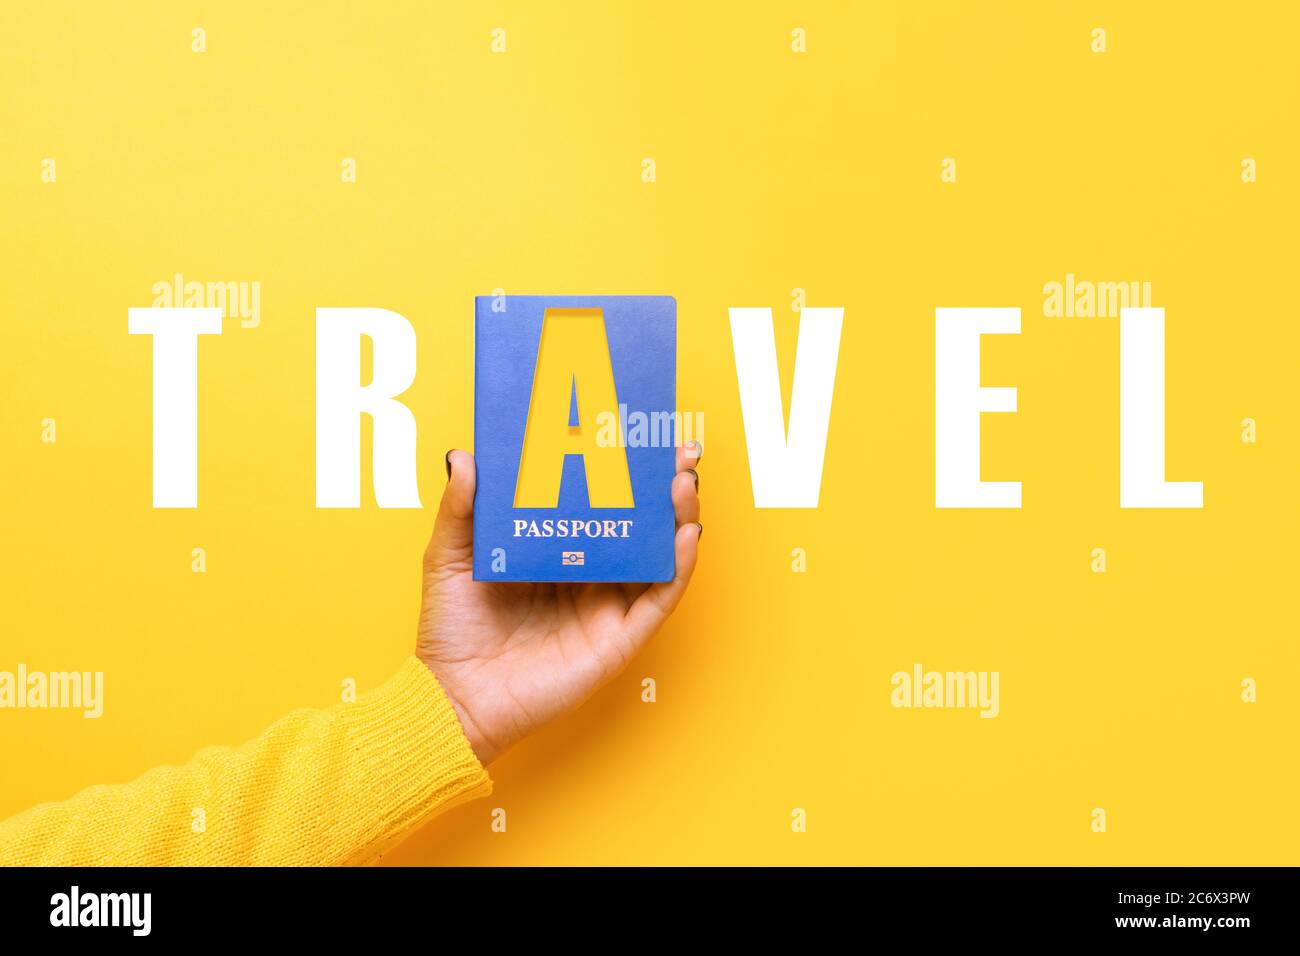 passaporto blu in mano su sfondo giallo, concetto di viaggio del mondo Foto Stock